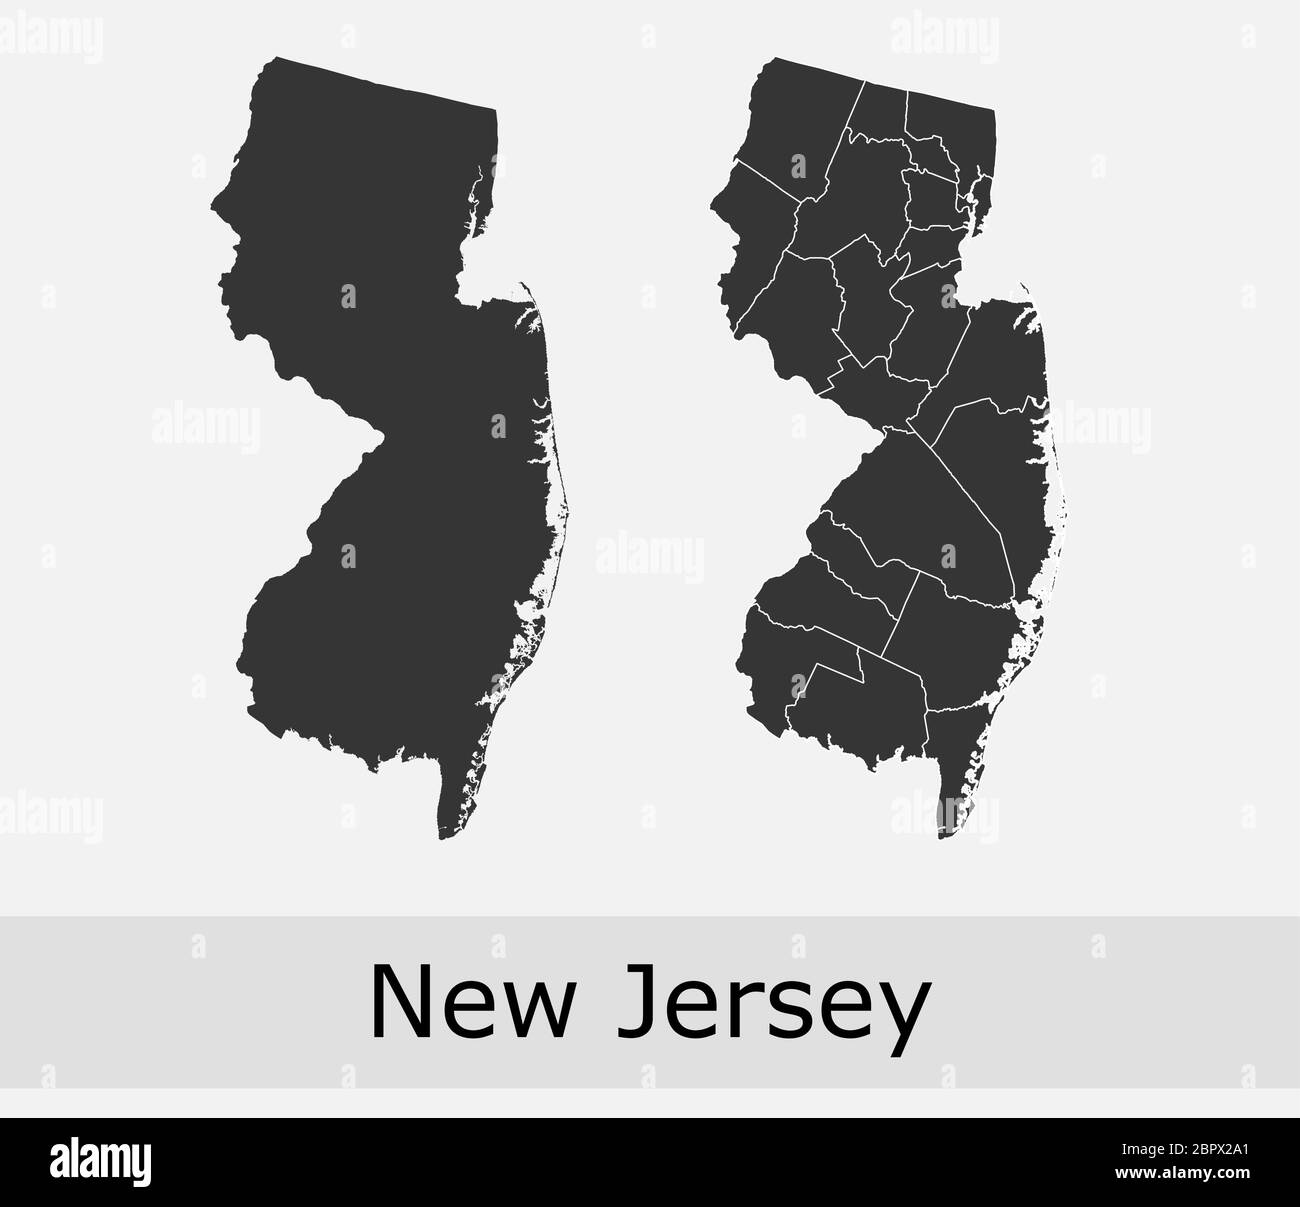 Cartes du New Jersey vector outline comtés, cantons, régions, municipalités, départements, frontières Illustration de Vecteur